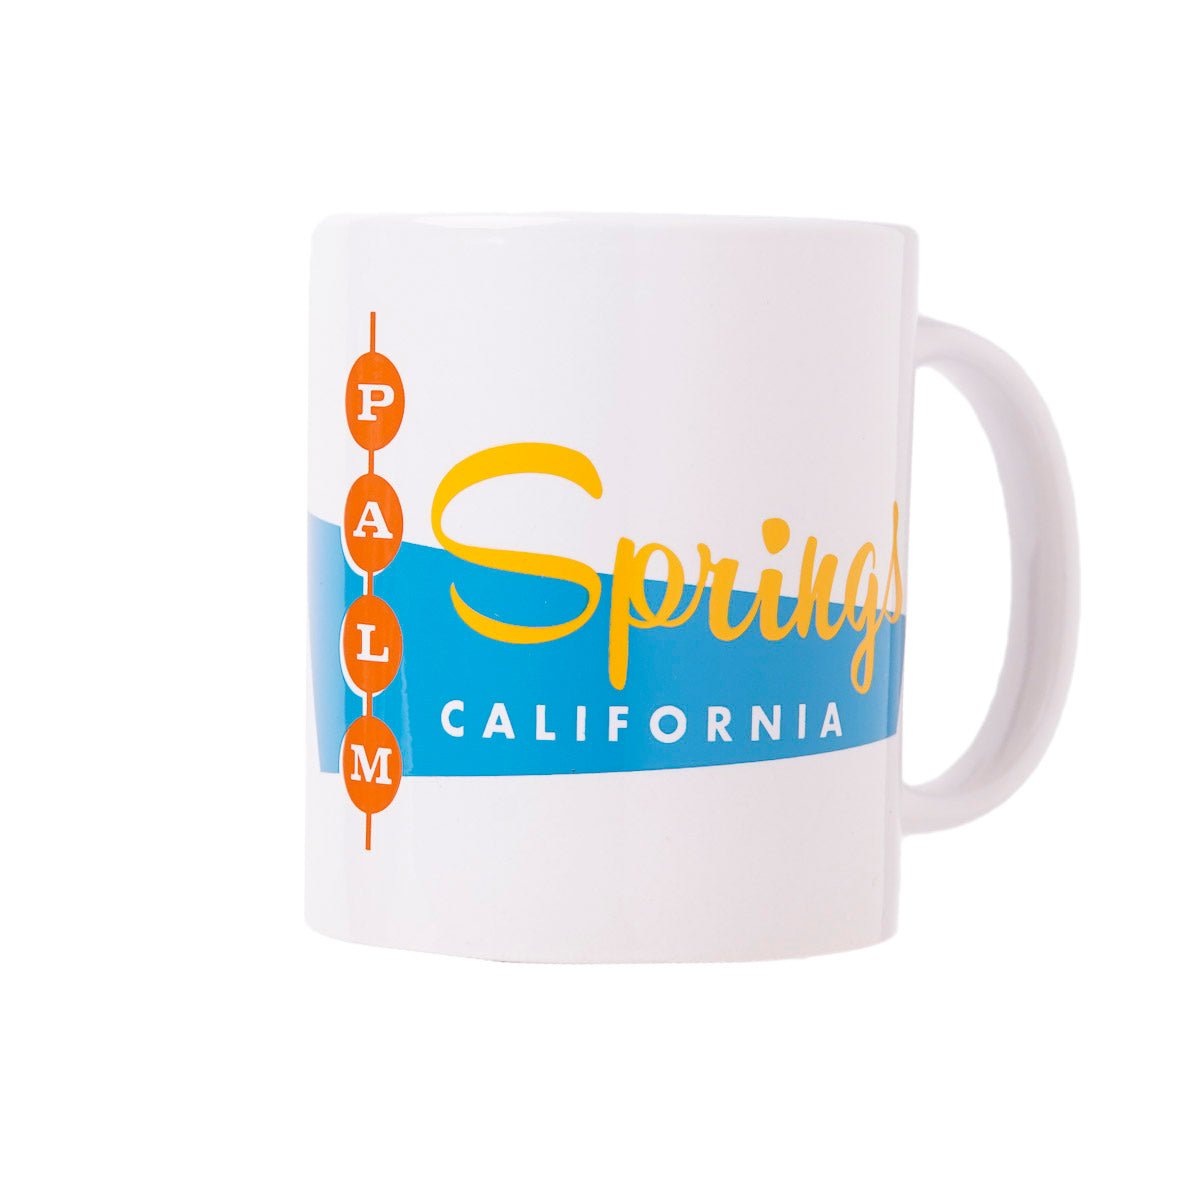 Palm Springs Retro Diner Design Coffee Mug - Destination PSP